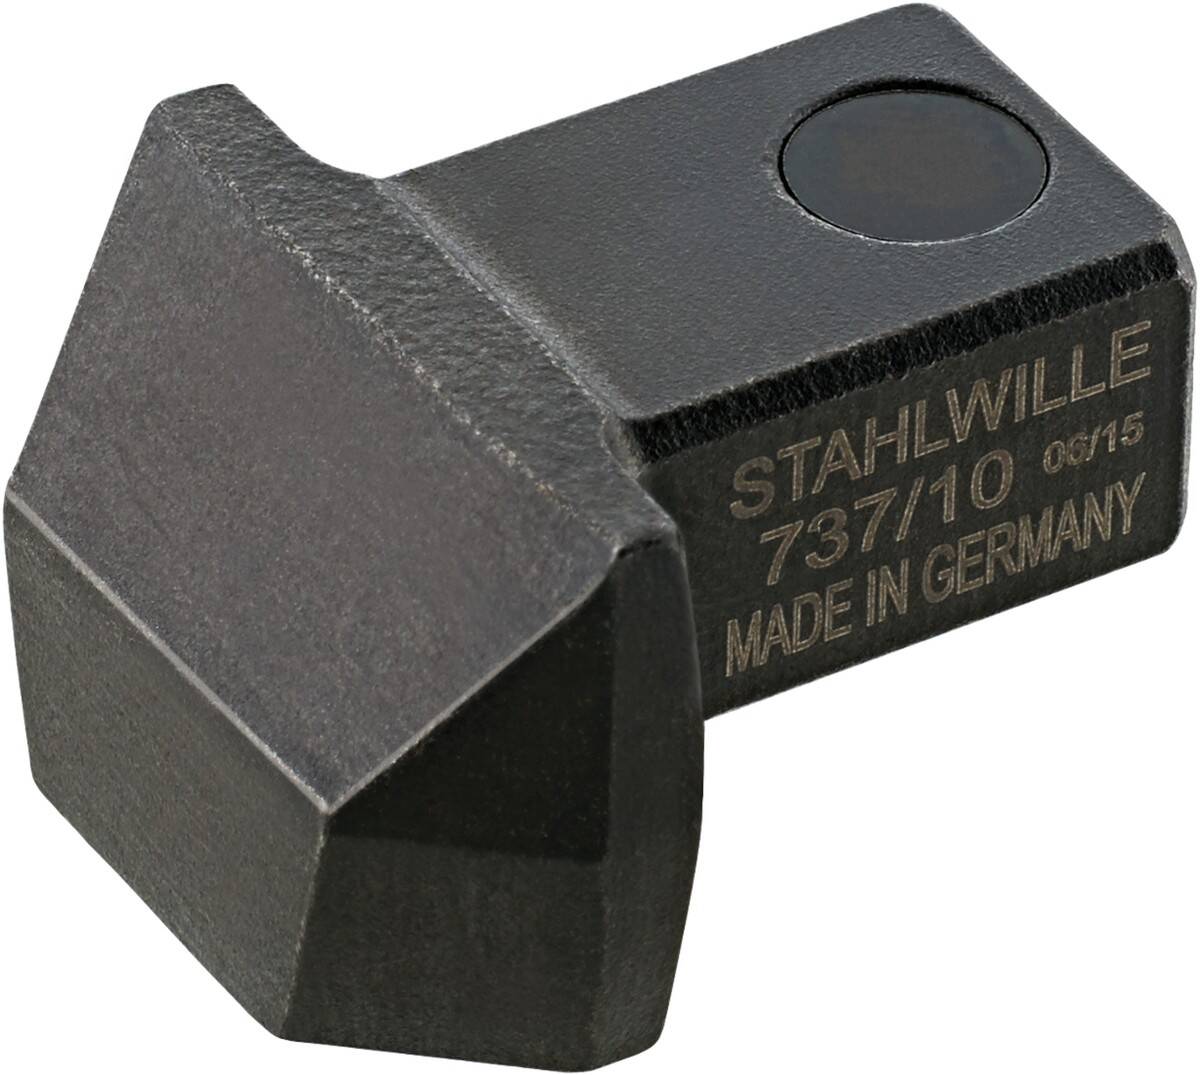 STAHLWILLE końcówka wtykowa do przyspawania narzędzi 9x12 mm 737/10 58270010